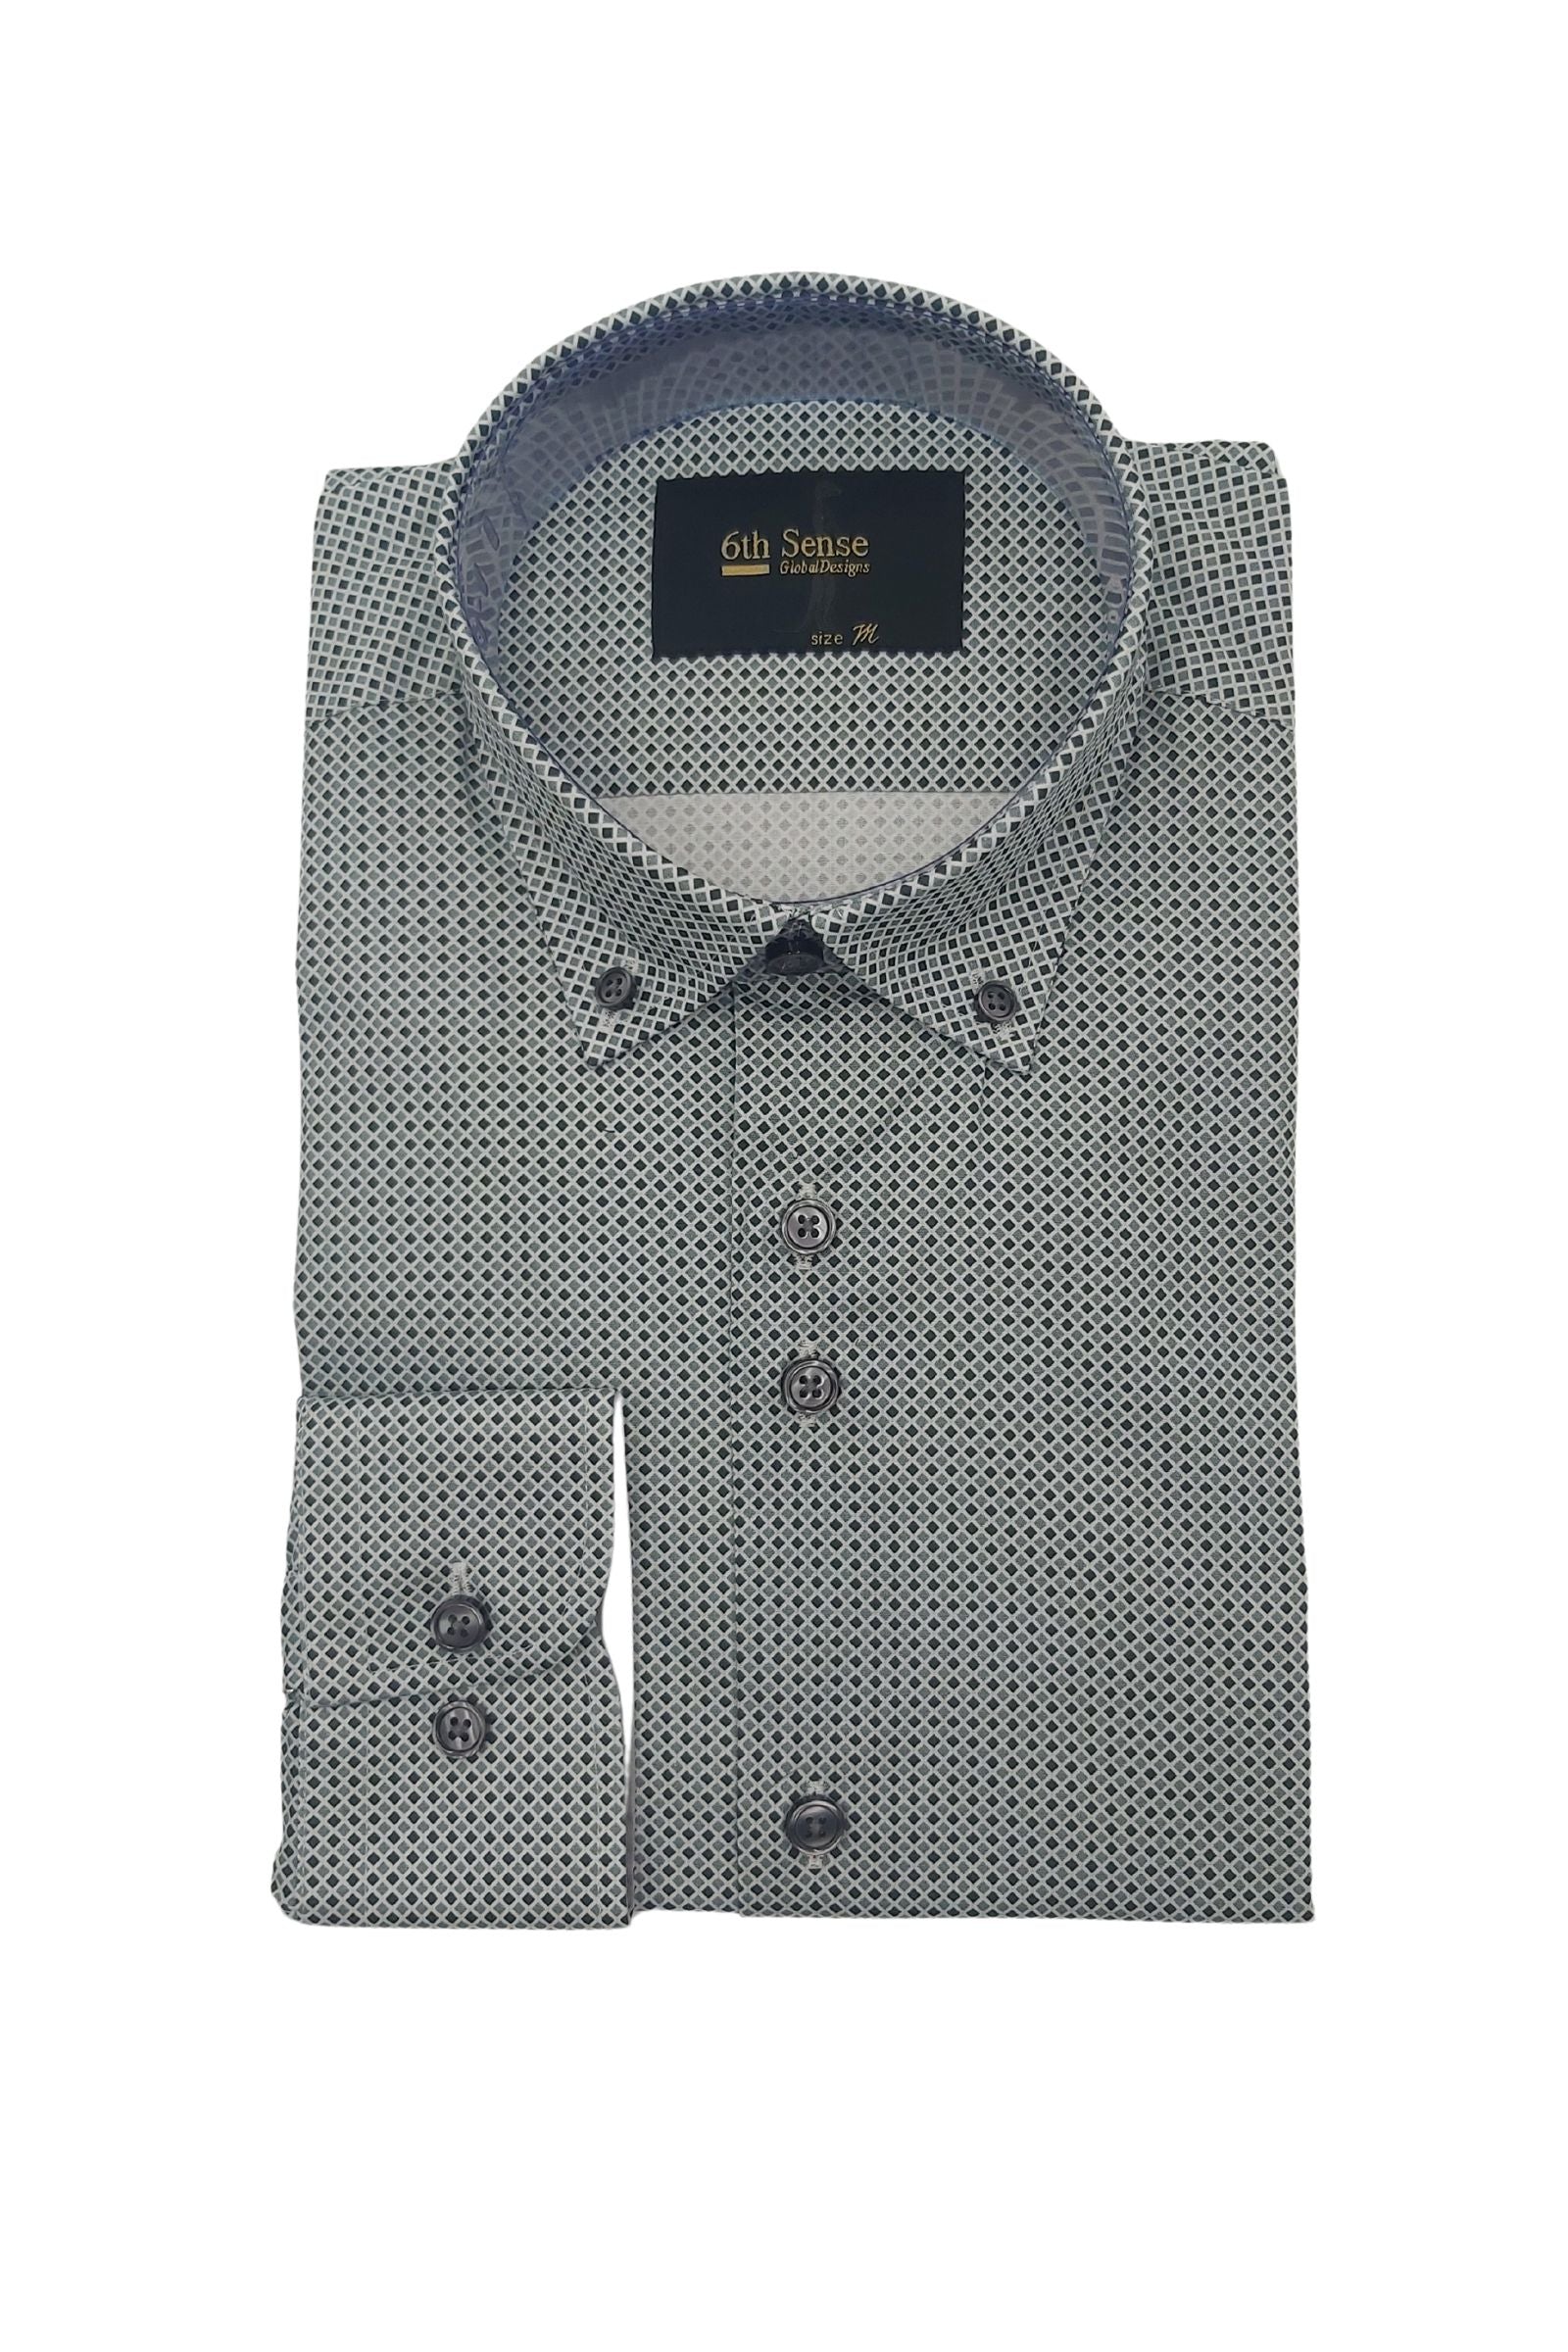 Men's Button Down Green/Black Diamond Print Shirt-Front View